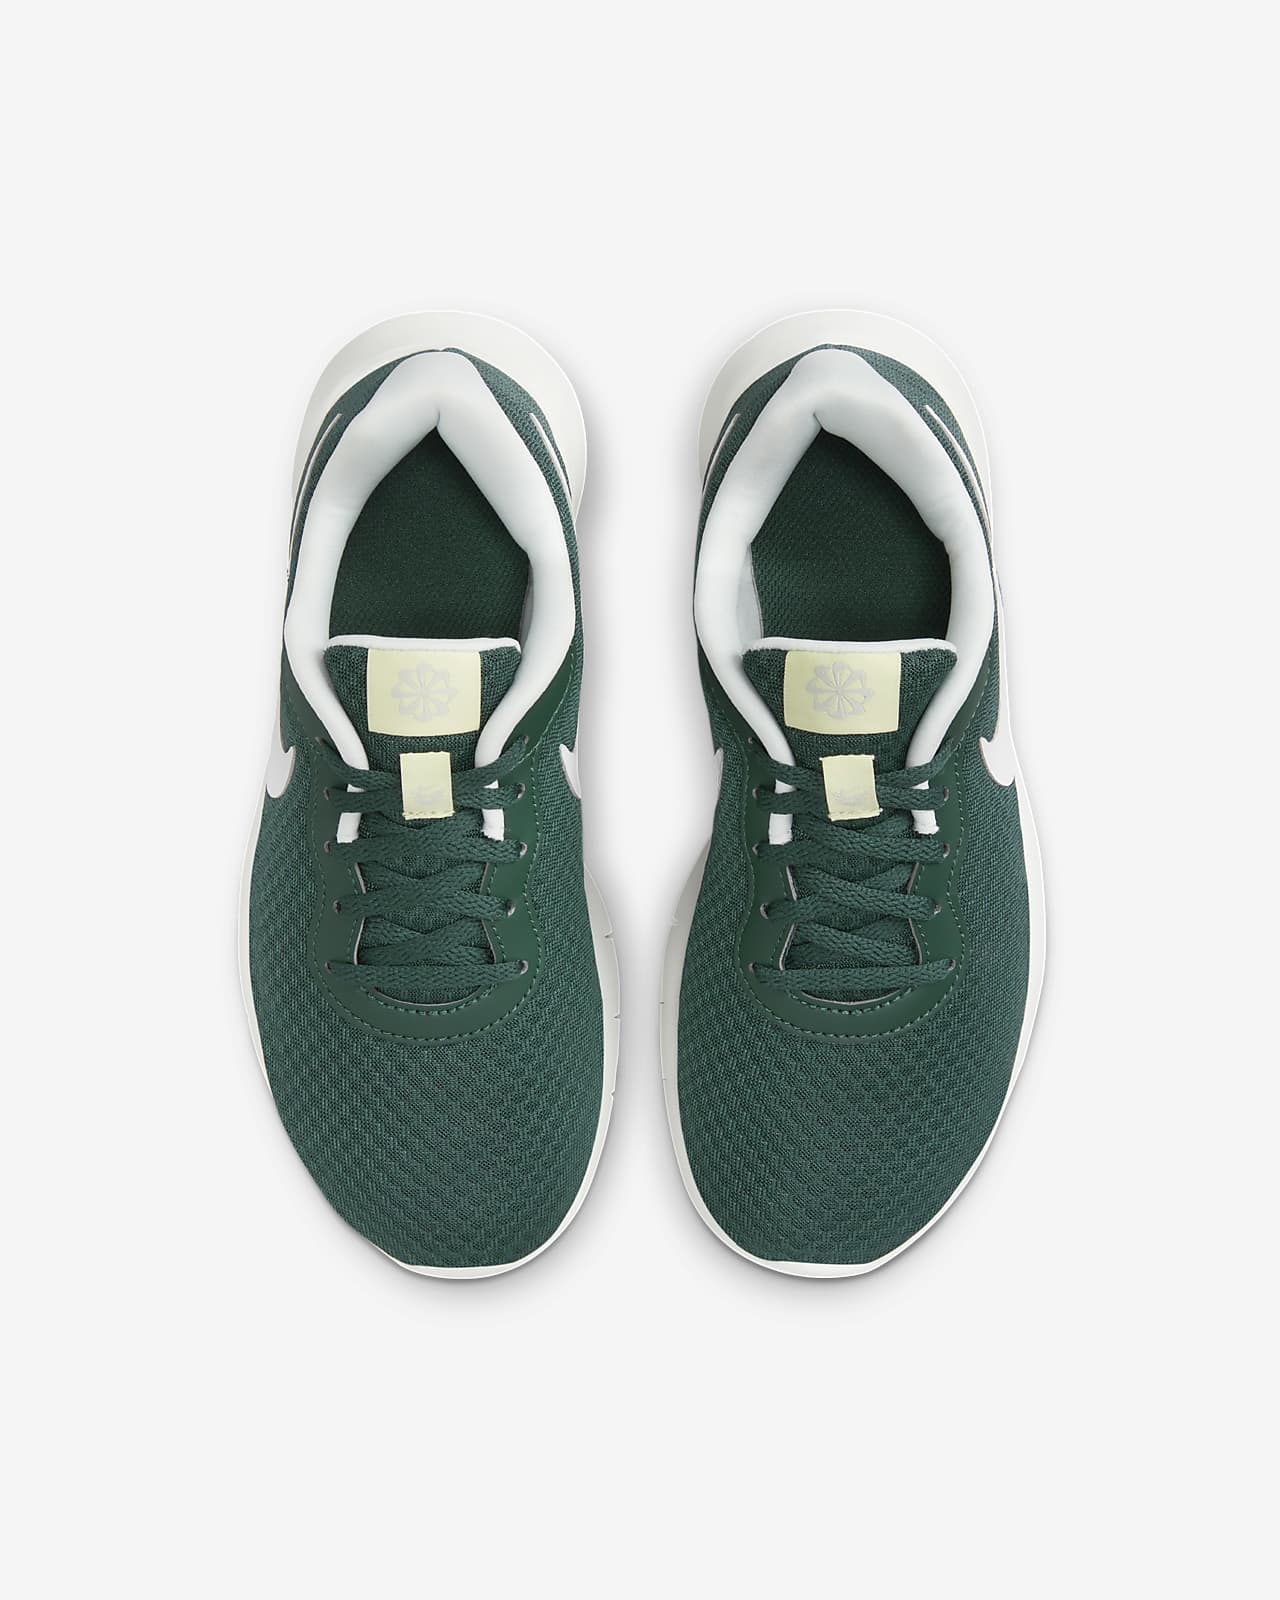 ID Kids\' Tanjun EasyOn Shoes. Older Nike Nike